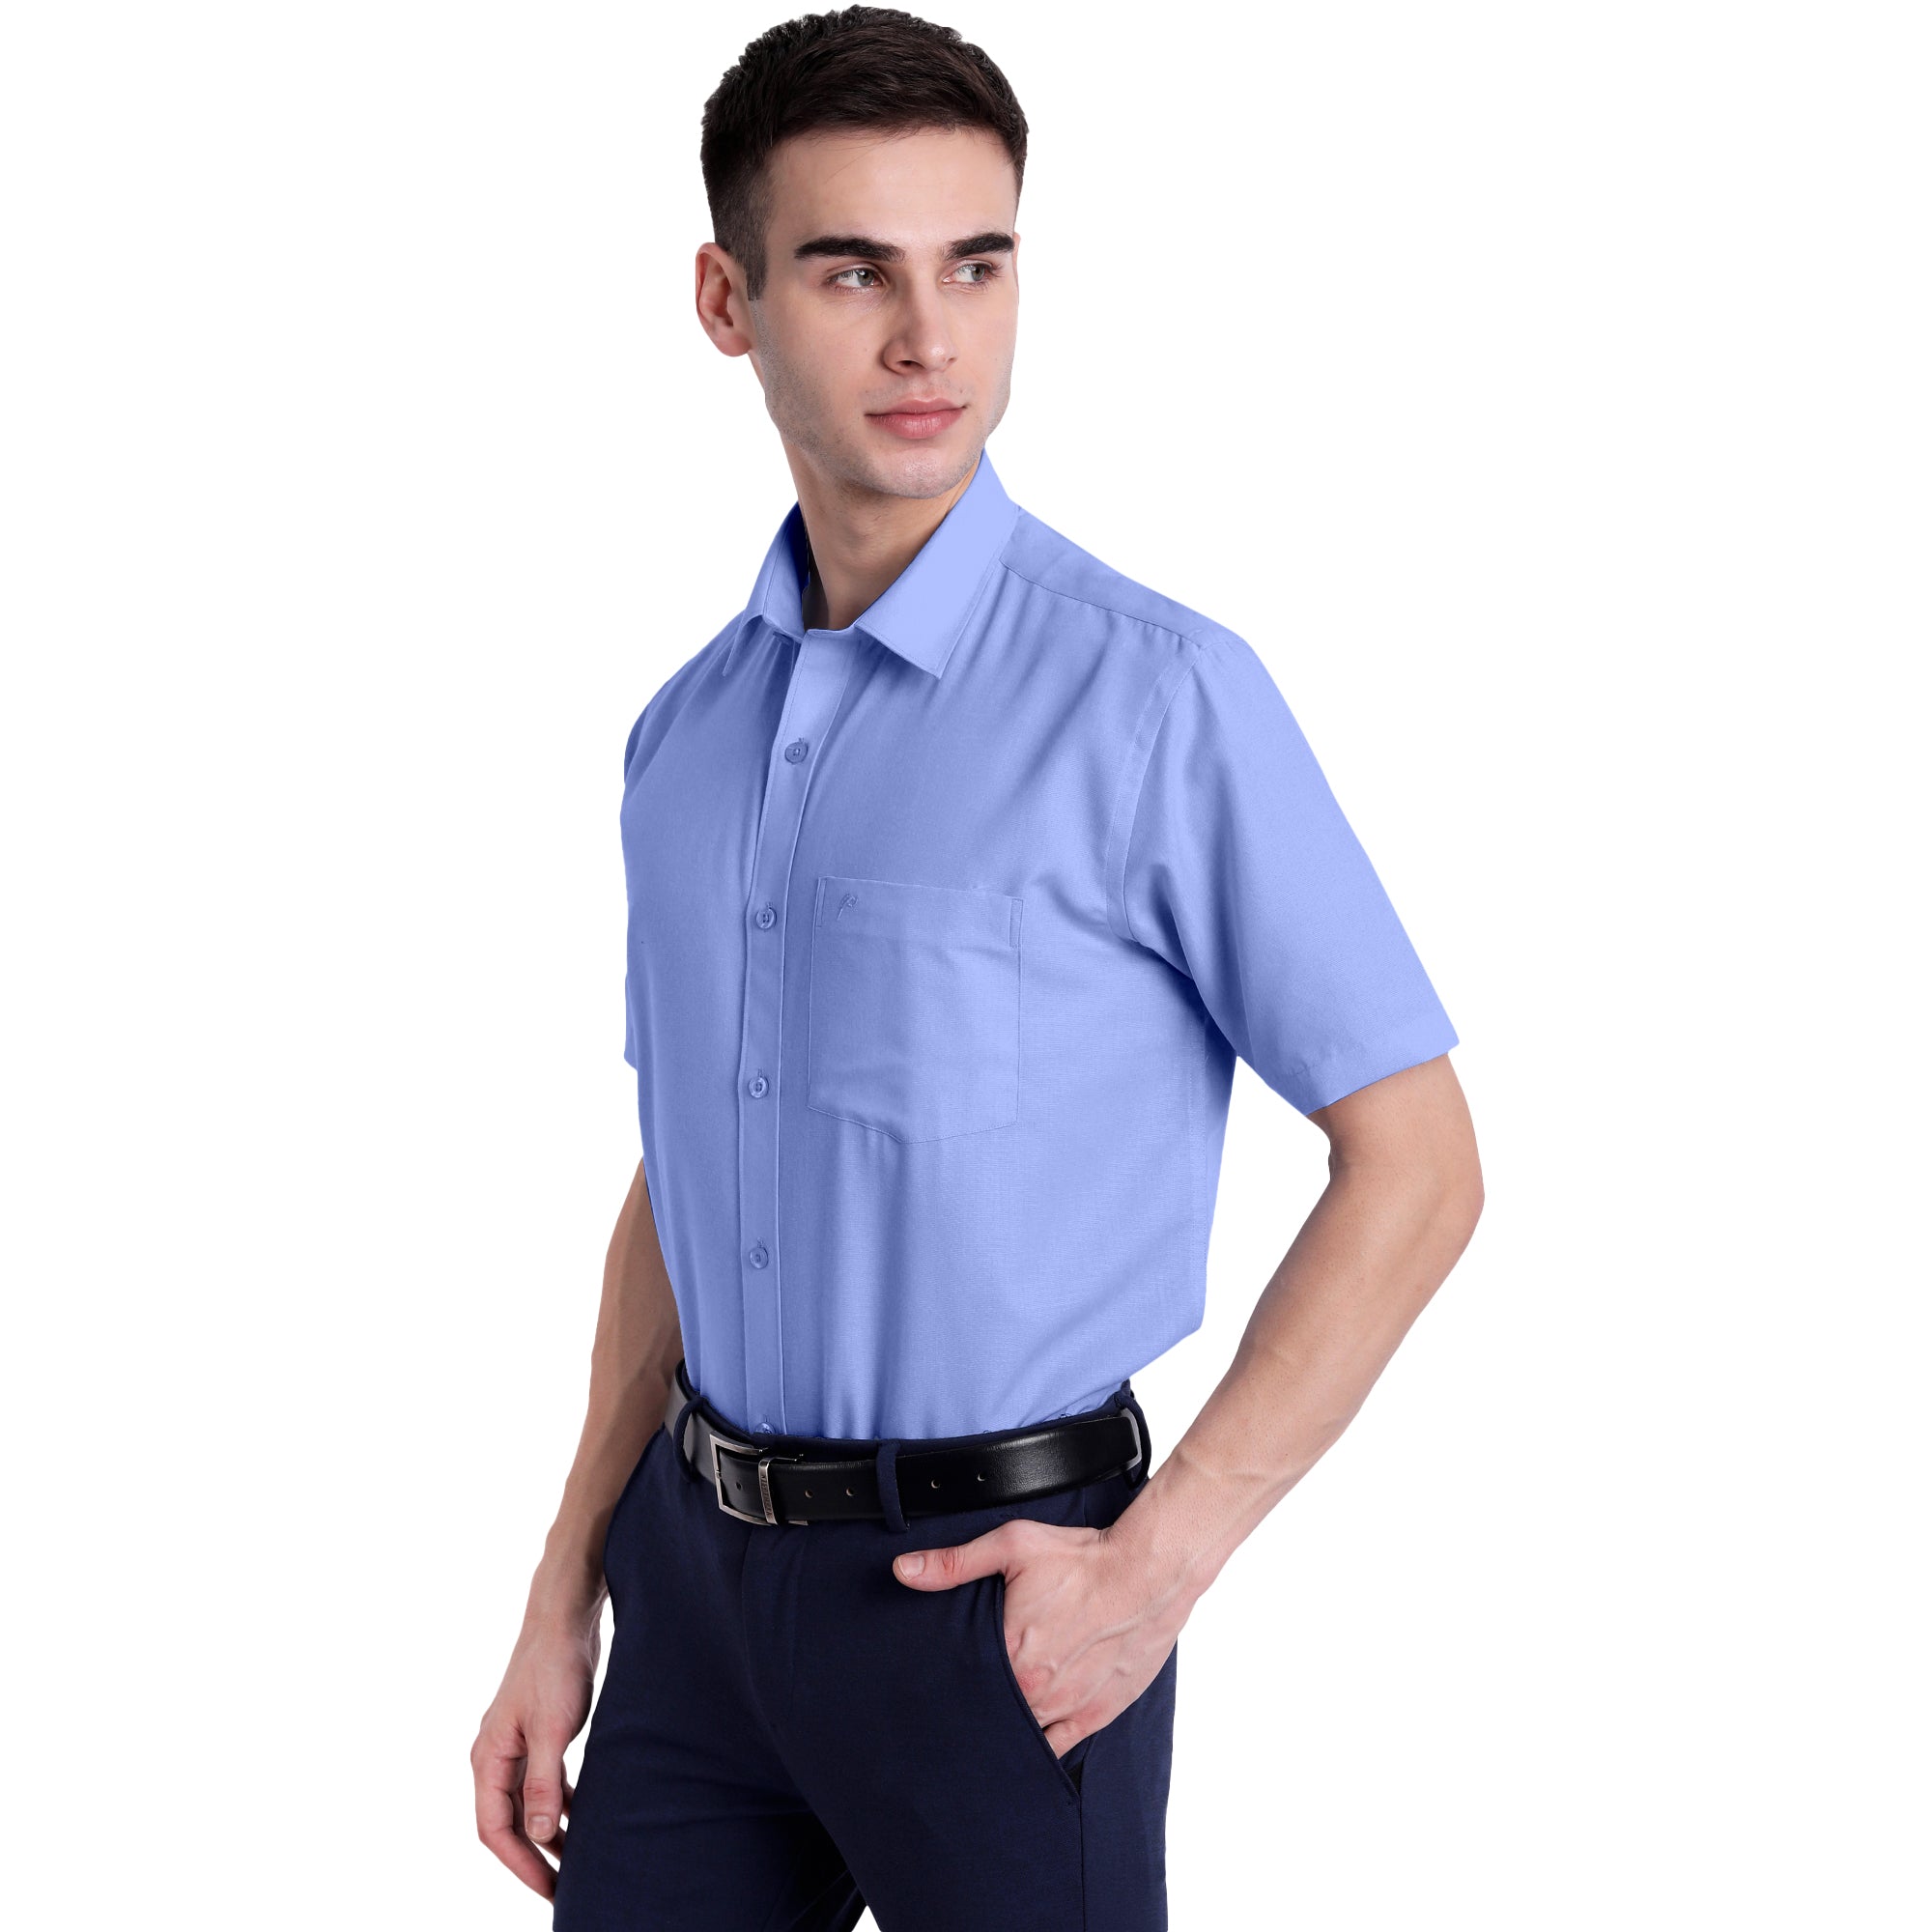 Poomer Elite Colour Shirt - Light Blue